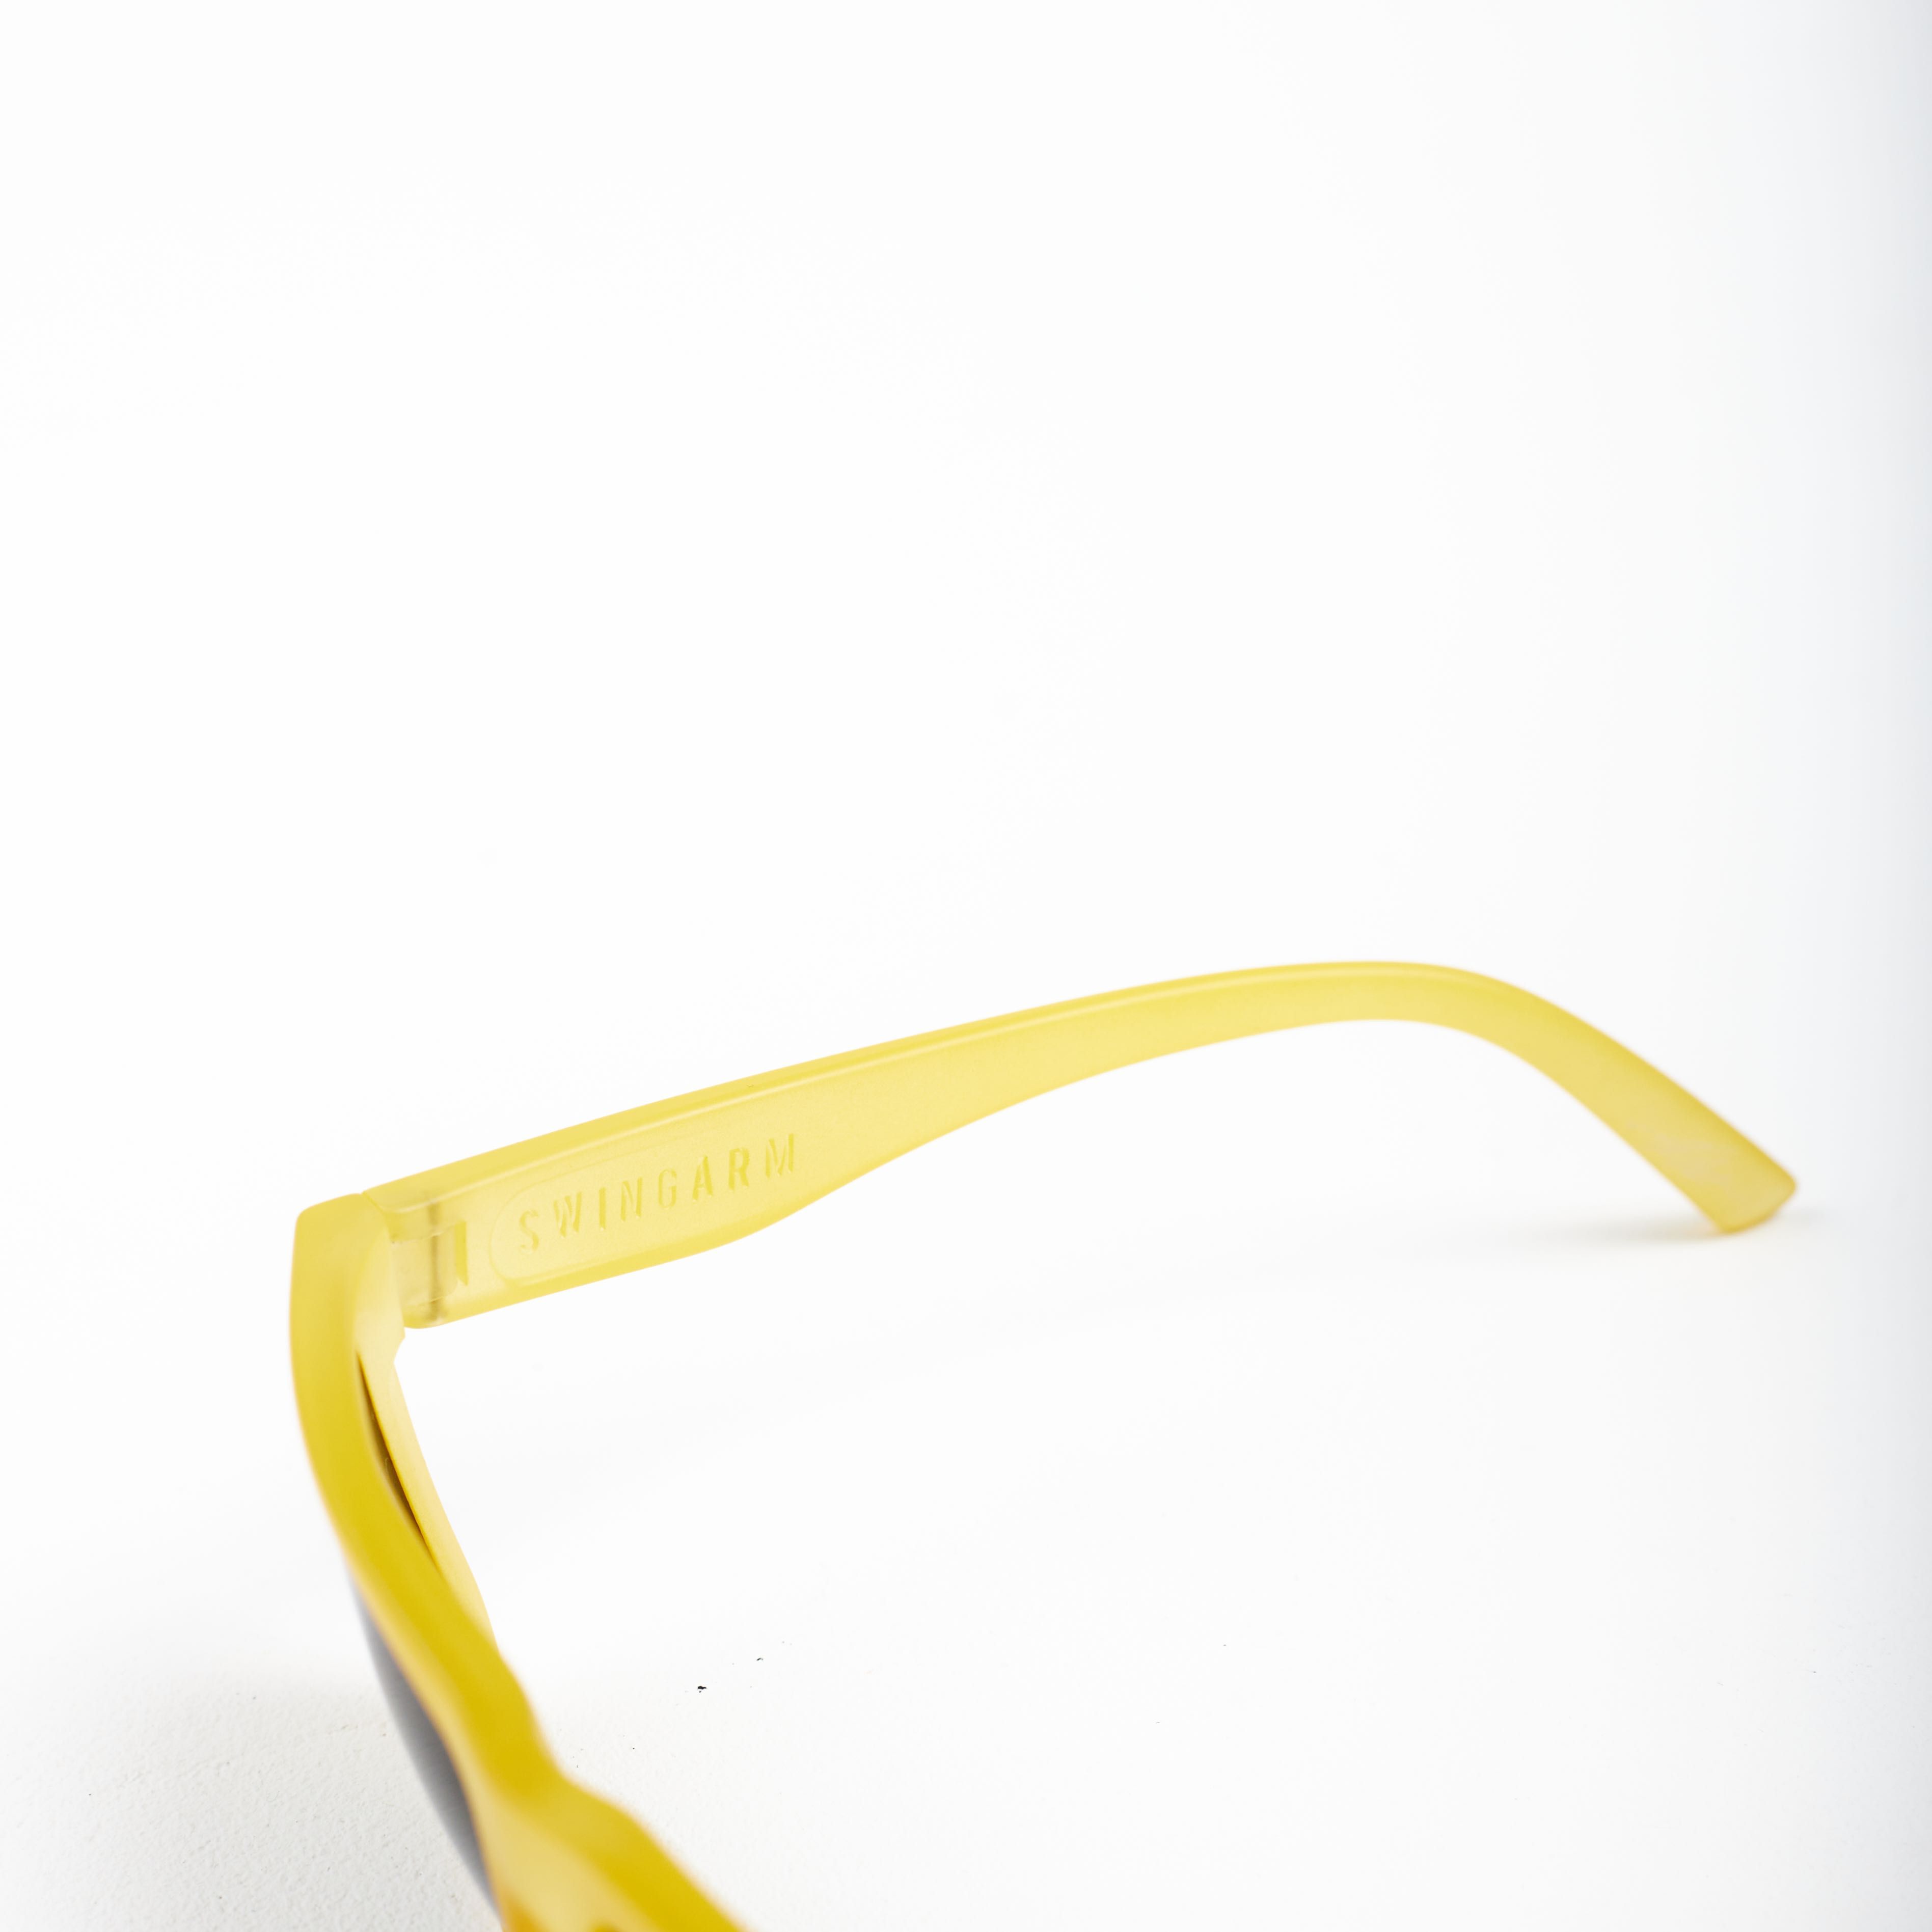 Electric Eyewear Swingarm Поляризаційні сонцезахисні окуляри